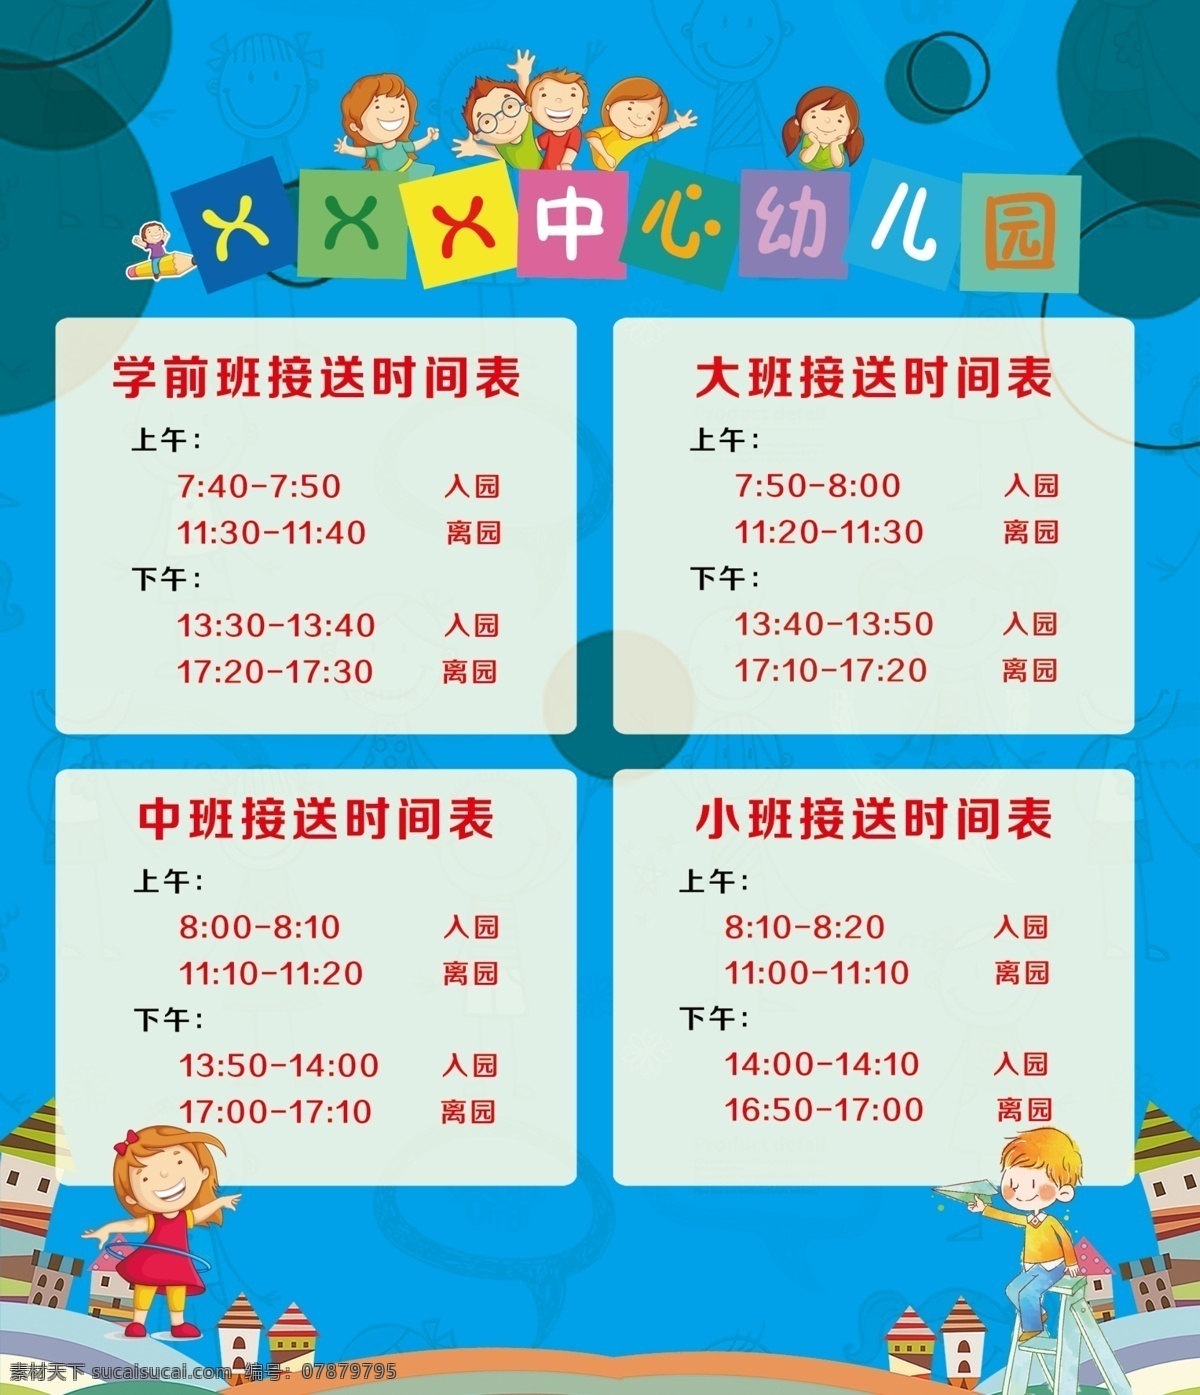 幼儿园 接送 时间表 幼儿园时间表 接送表 幼儿园海报 幼儿园素材